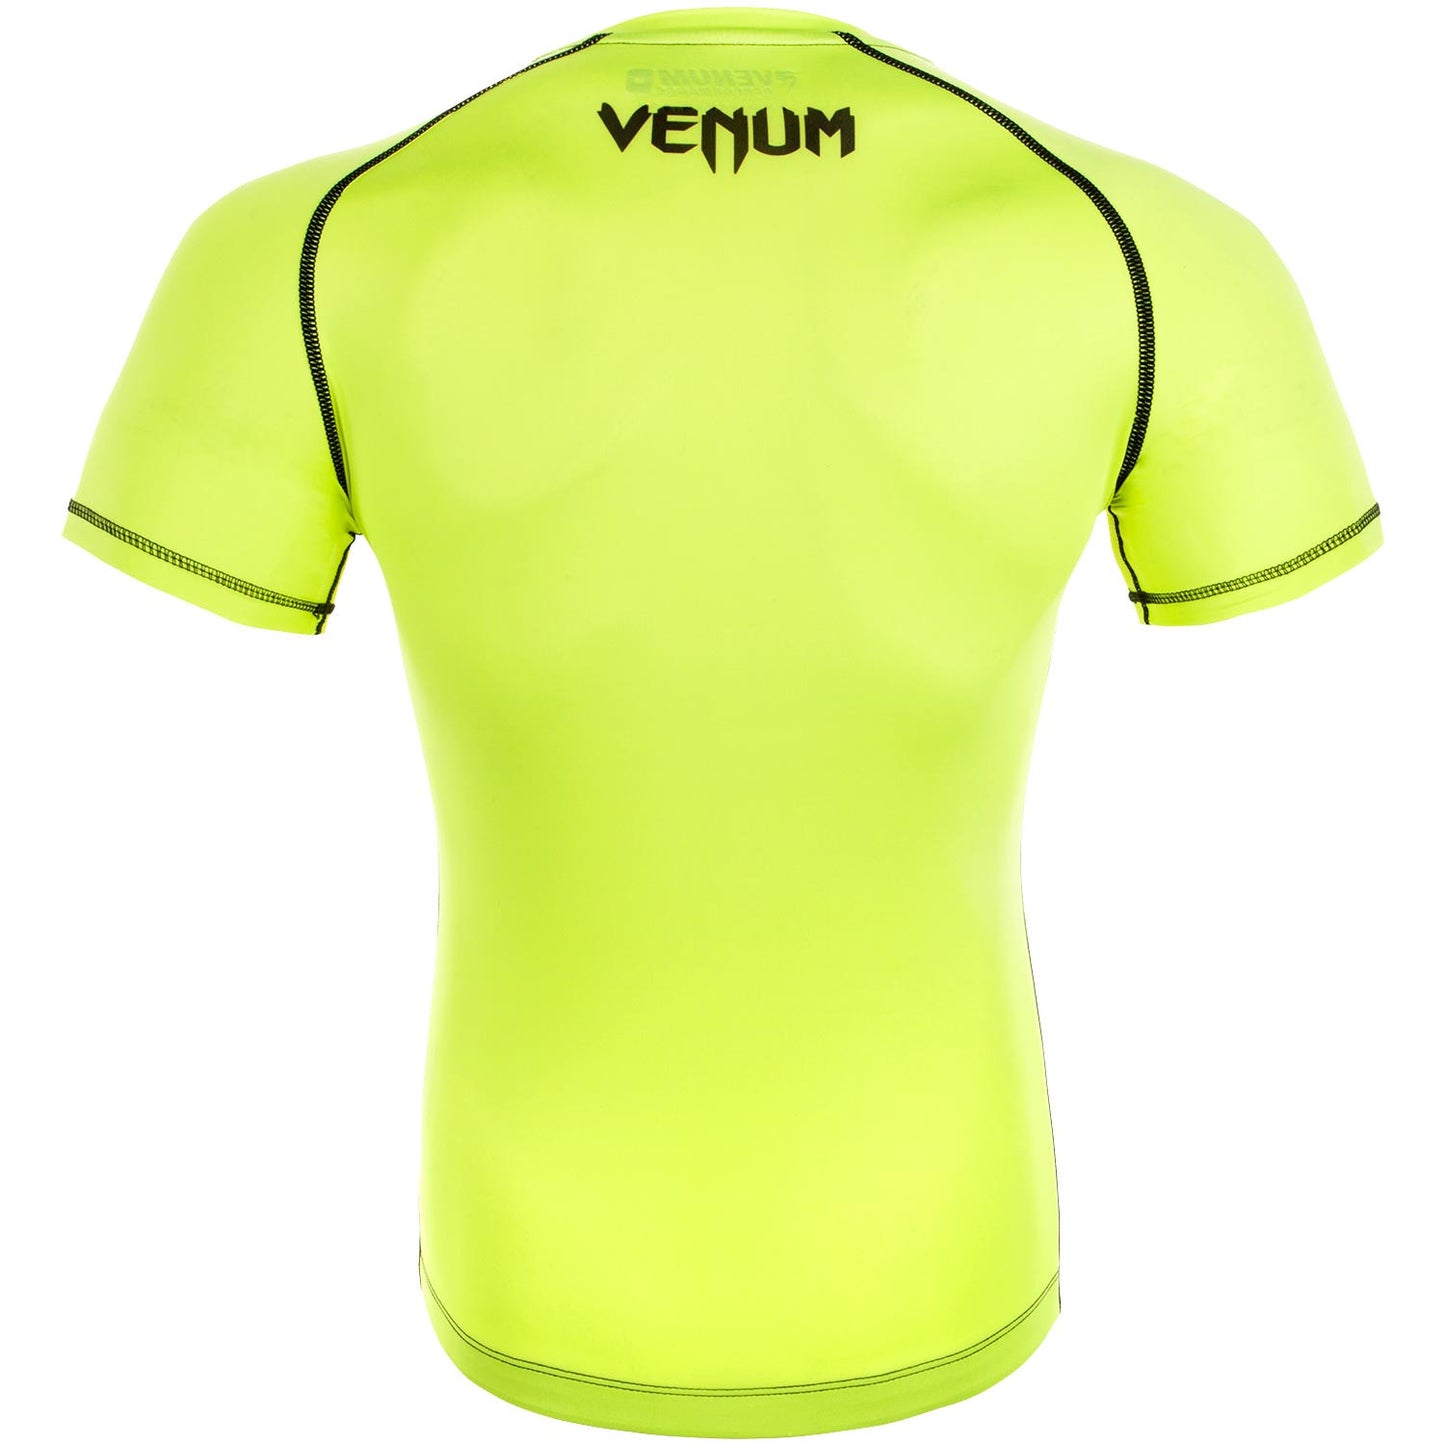 Camiseta de Compresión Venum Contender 3.0 - Mangas Cortas - Neo Amarillo/Negro